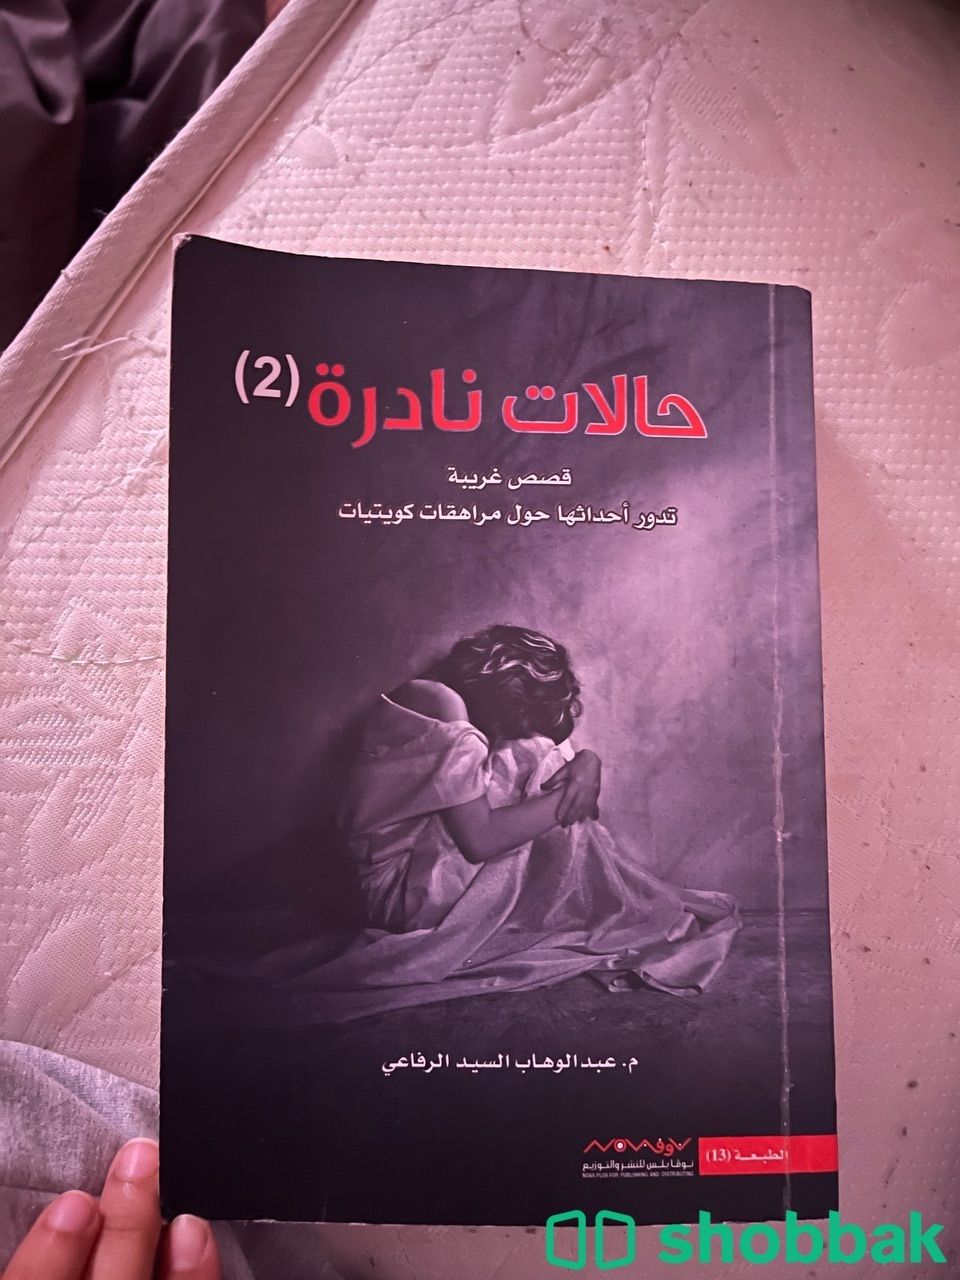 كتاب حالات نادره 2 Shobbak Saudi Arabia